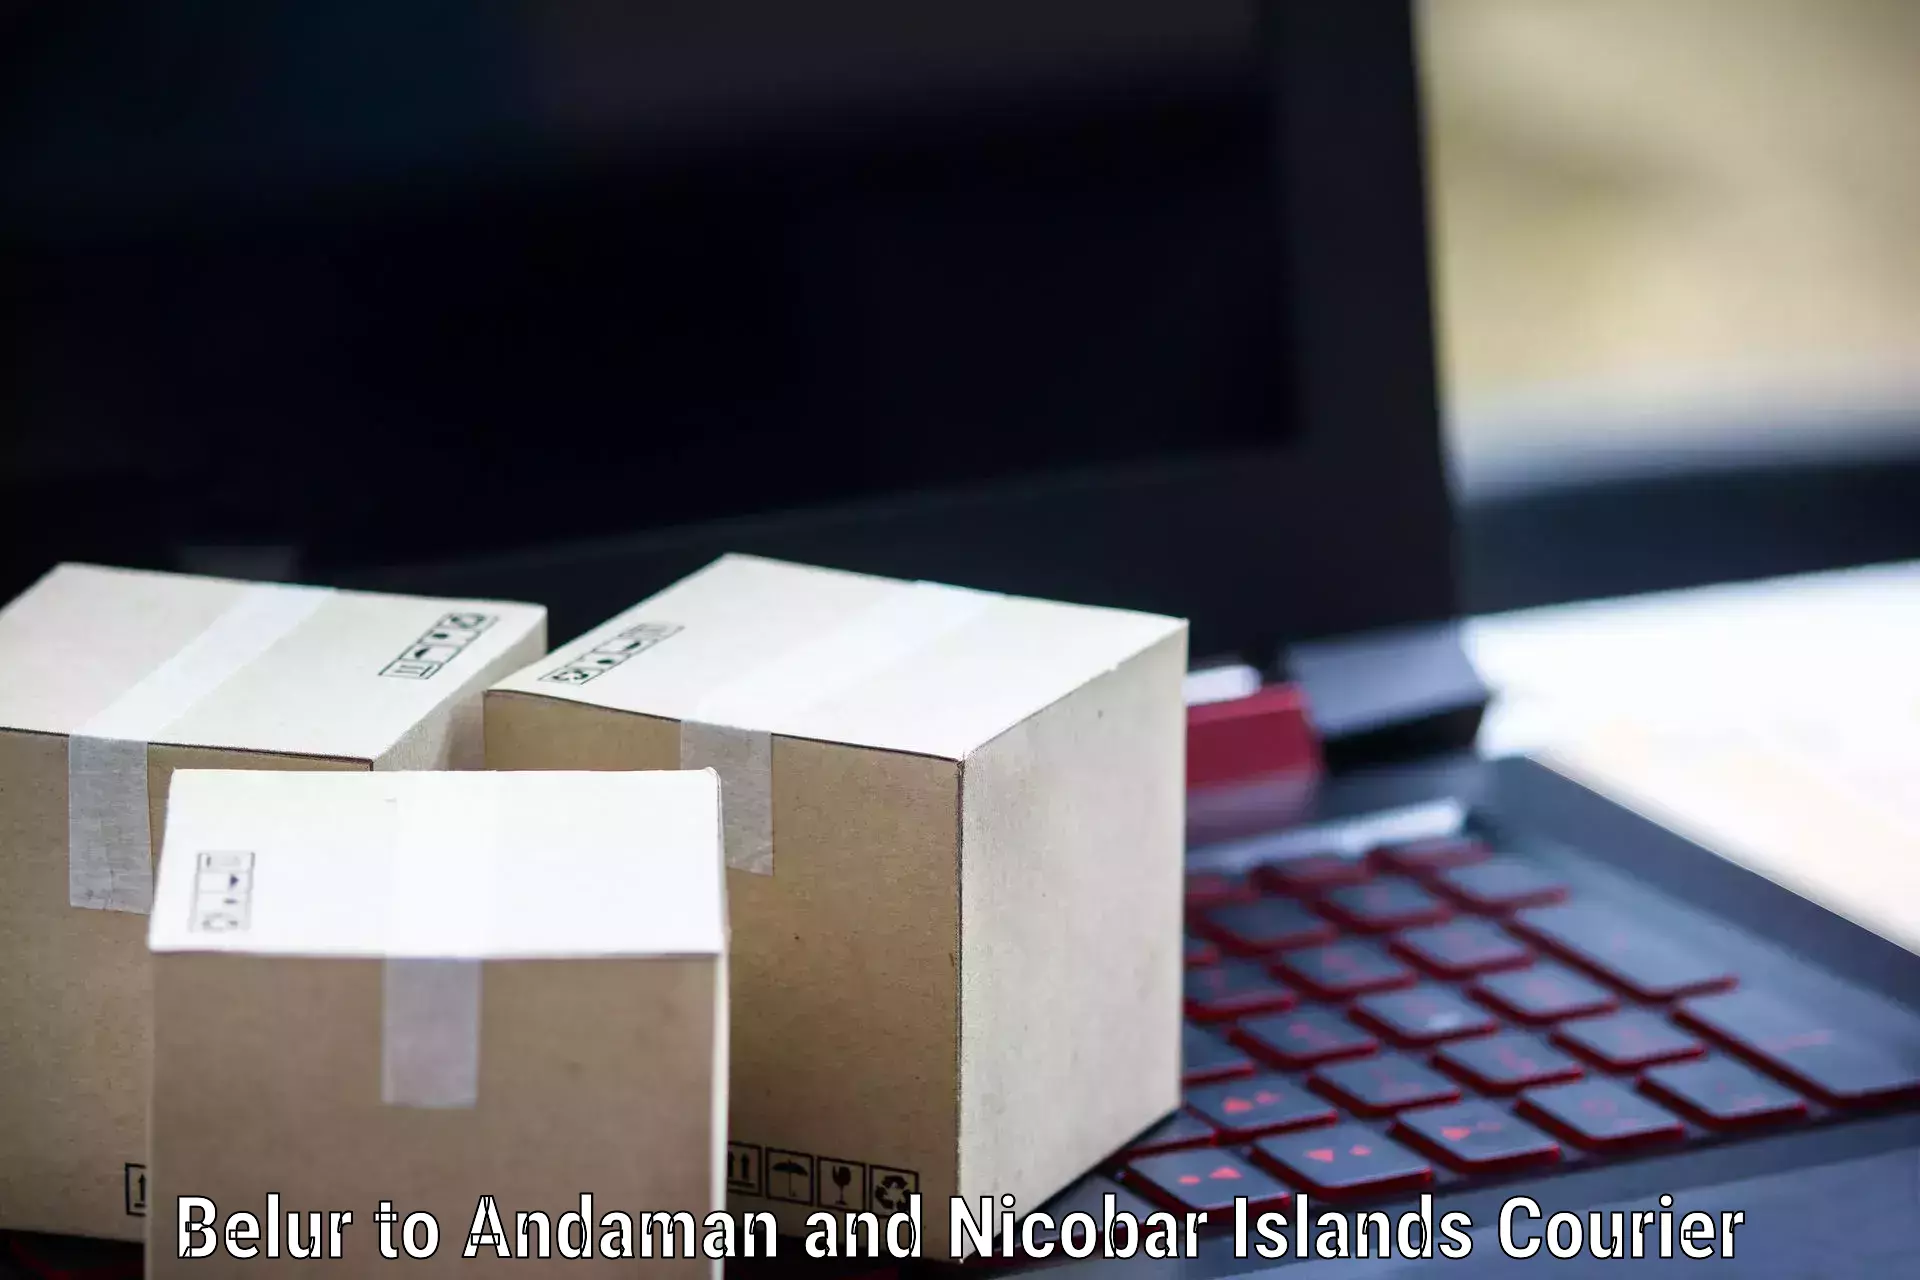 Digital courier platforms Belur to Andaman and Nicobar Islands